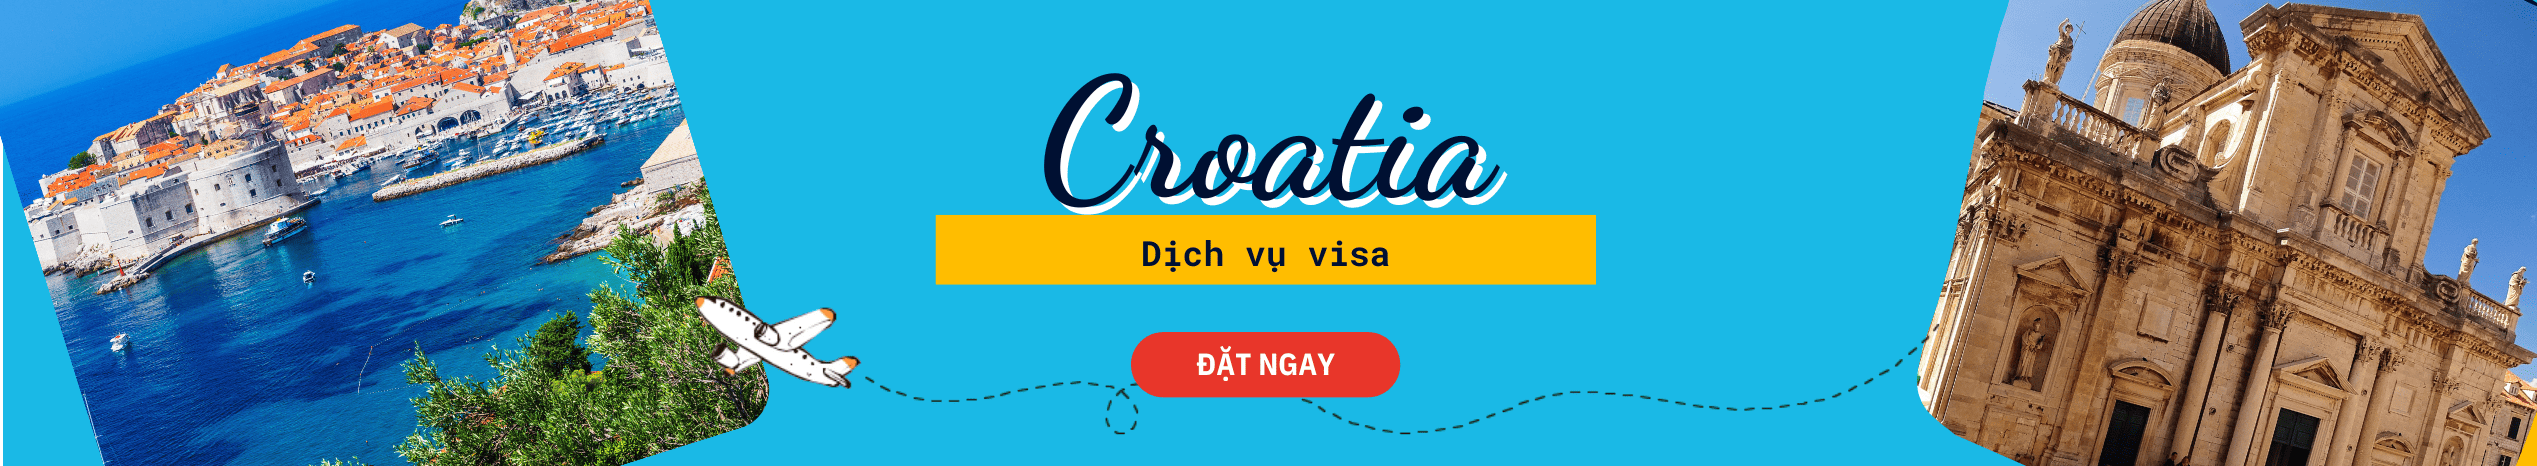 Dịch vụ hỗ trợ xin Visa Croatia du lịch & công tác